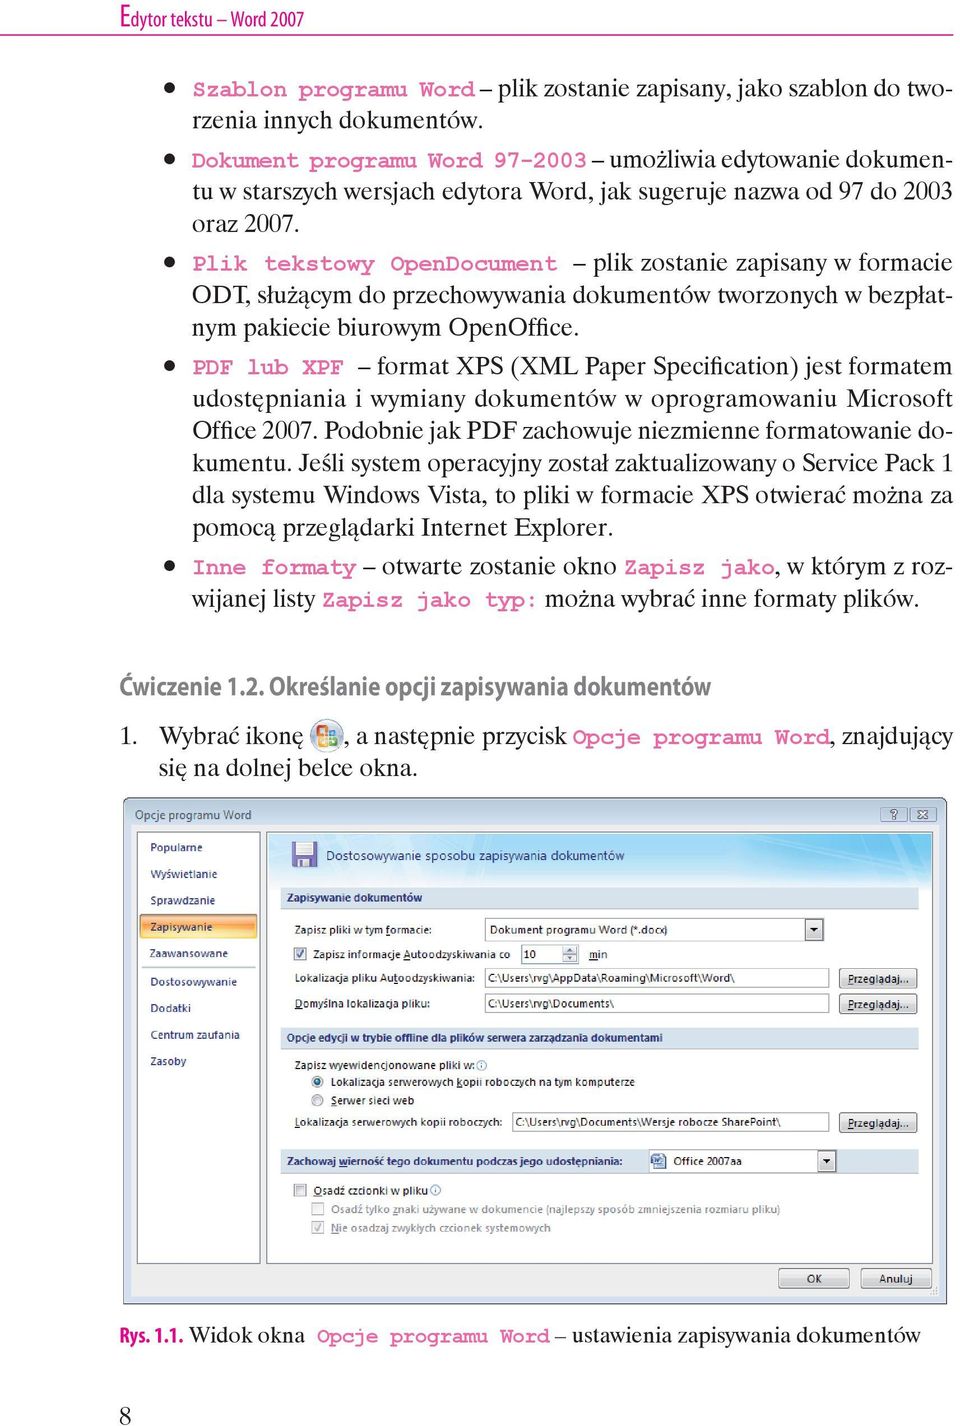 Plik tekstowy OpenDocument plik zostanie zapisany w formacie ODT, służącym do przechowywania dokumentów tworzonych w bezpłatnym pakiecie biurowym OpenOffice.